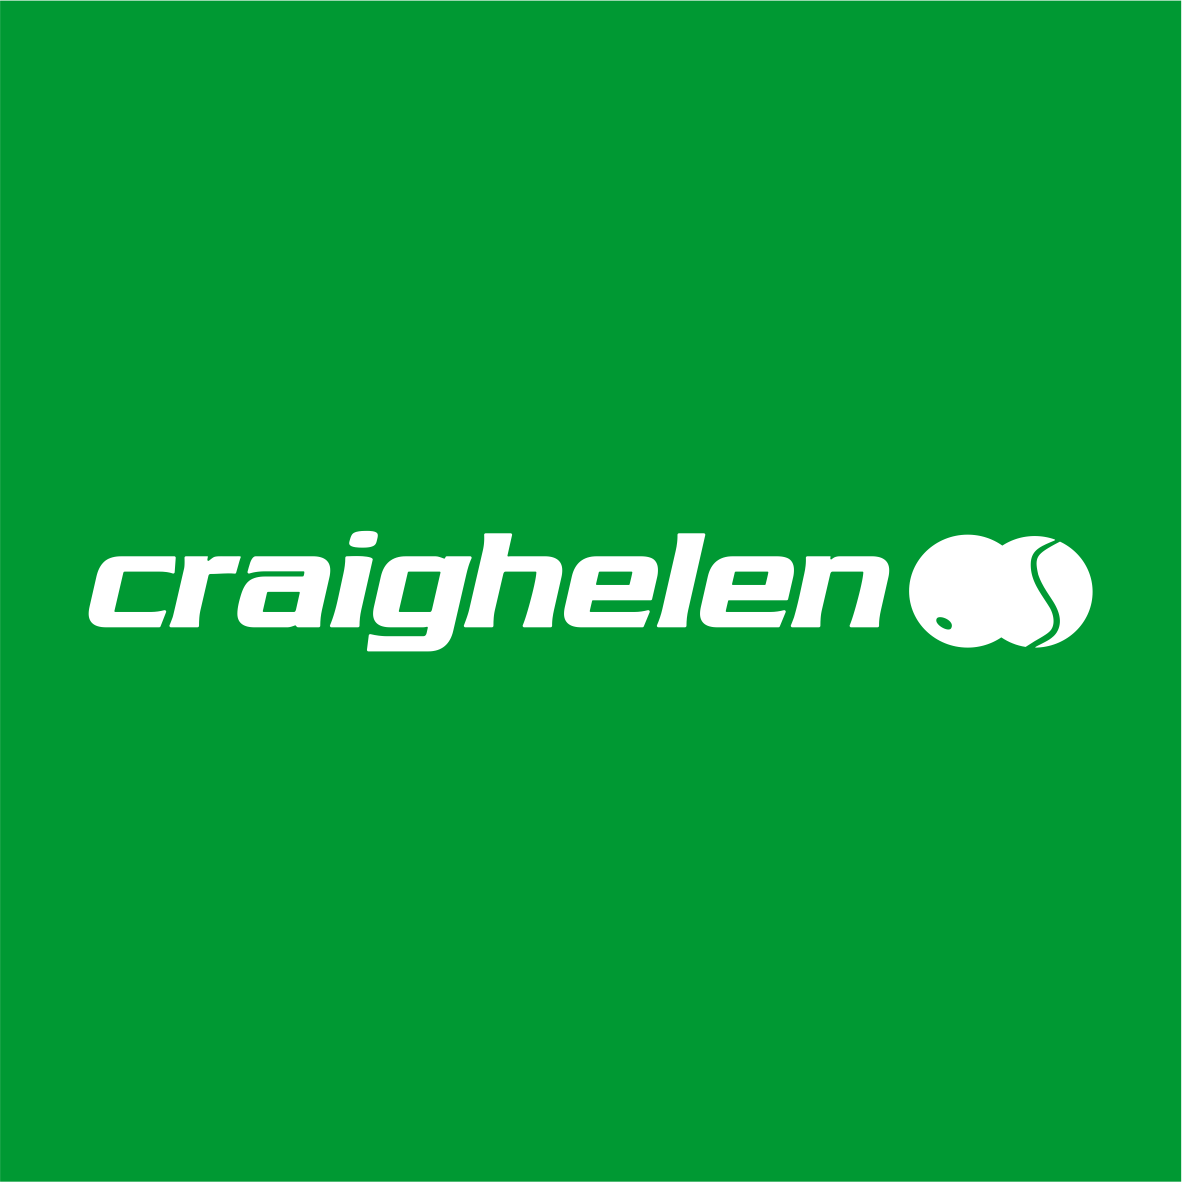 Craighelen Tennis & Squash